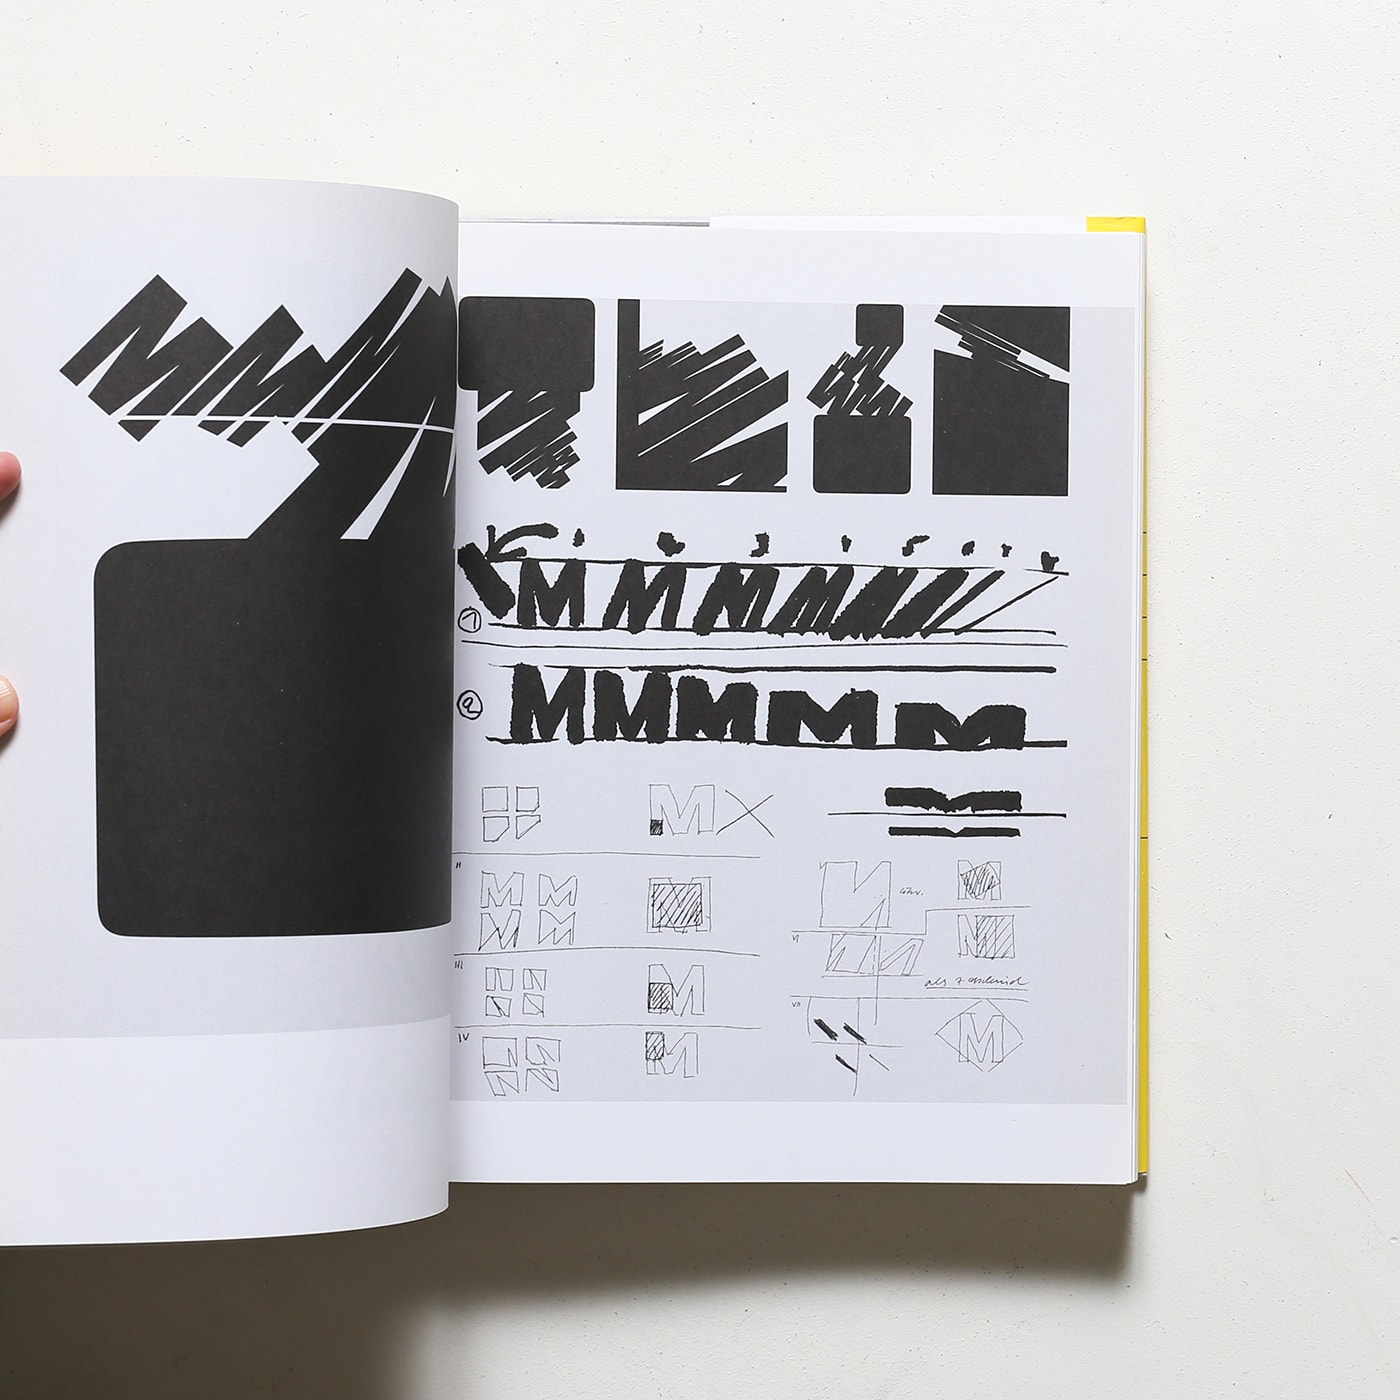 My Way to Typography ハードカバー版 | Wolfgang Weingart 